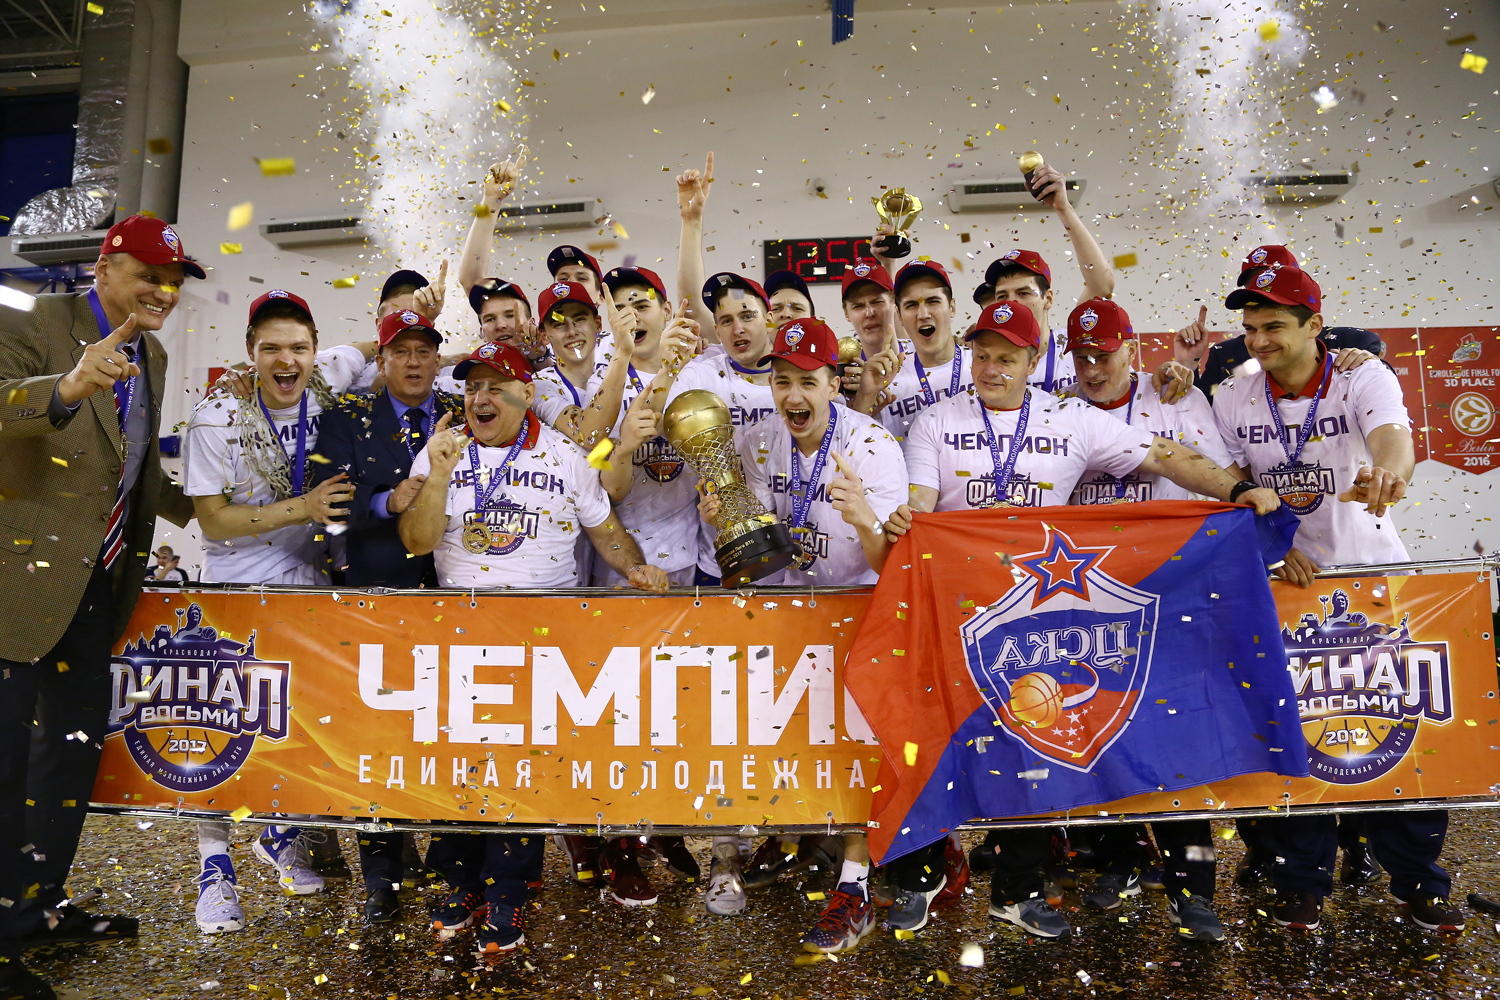 ЦСКА-2 — чемпионы молодежной Лиги в сезоне-2016/17!